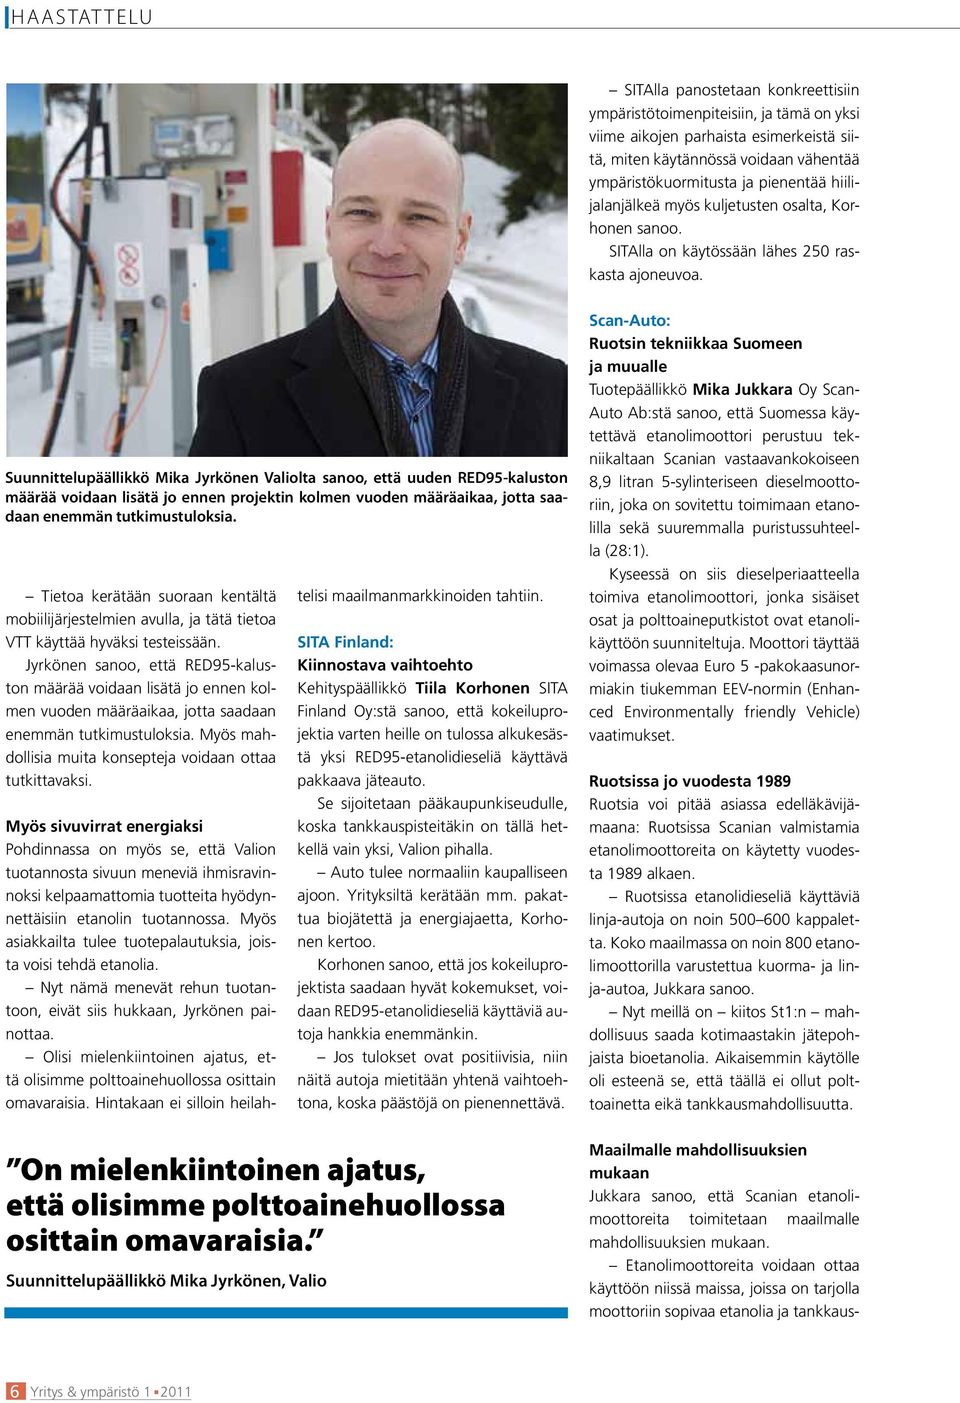 Suunnittelupäällikkö Mika Jyrkönen Valiolta sanoo, että uuden RED95-kaluston määrää voidaan lisätä jo ennen projektin kolmen vuoden määräaikaa, jotta saadaan enemmän tutkimustuloksia.